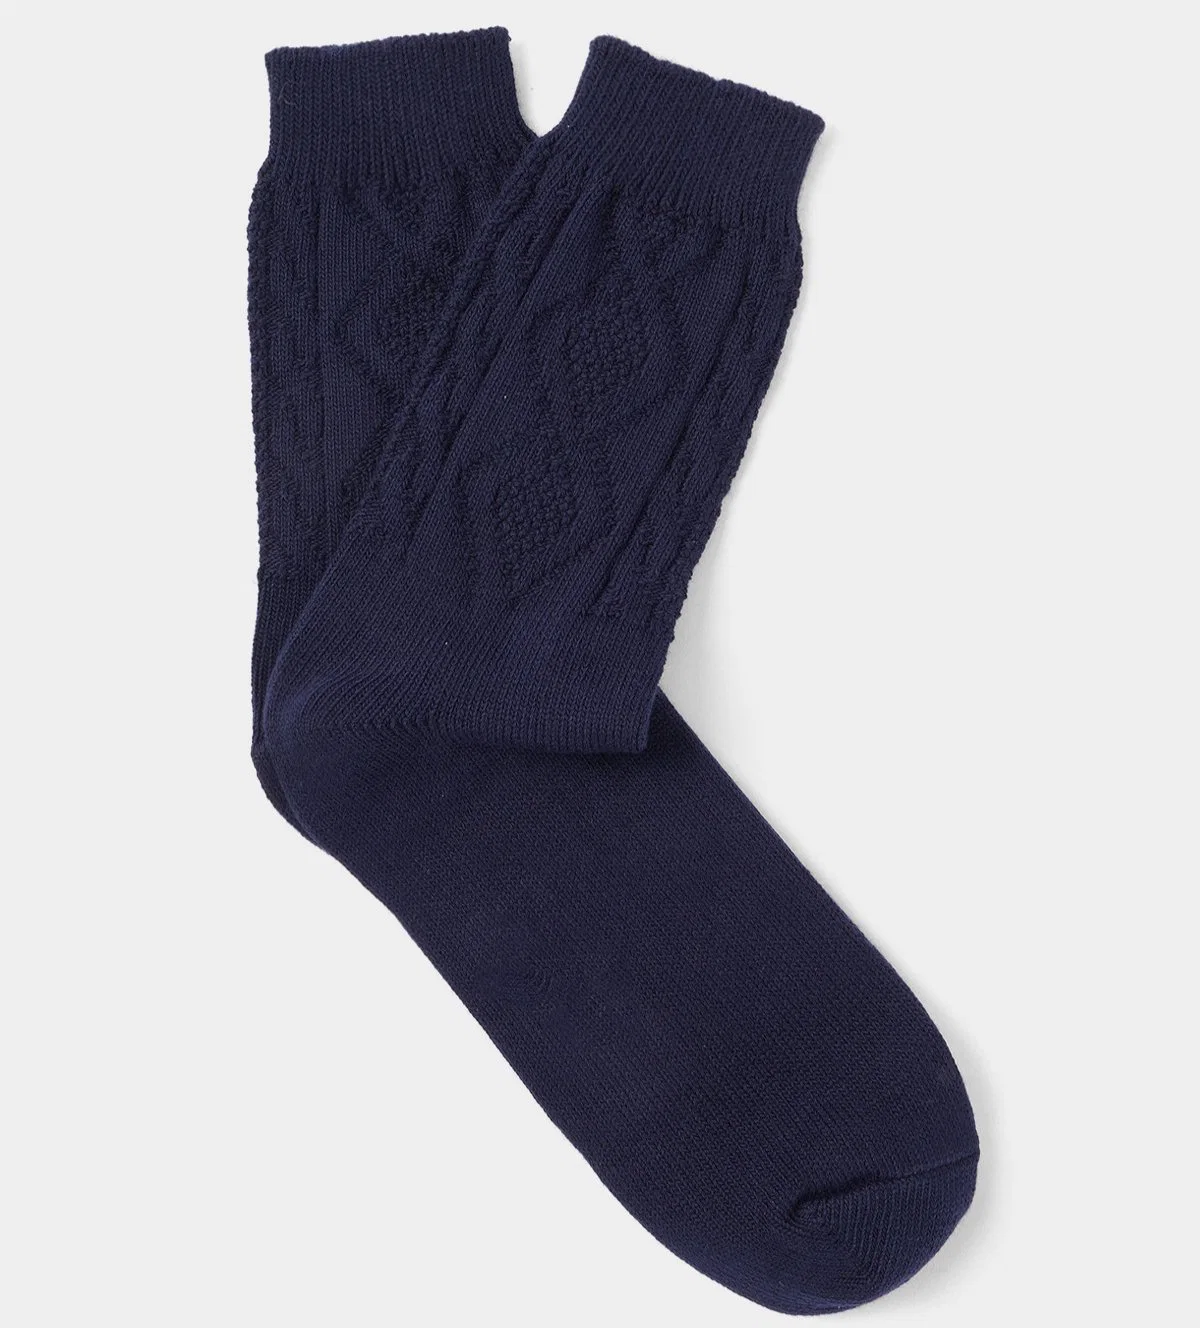 Baumwolle Kaschmir Rippgestrickte Ladies Fashion Socken Bekleidung Accessoires